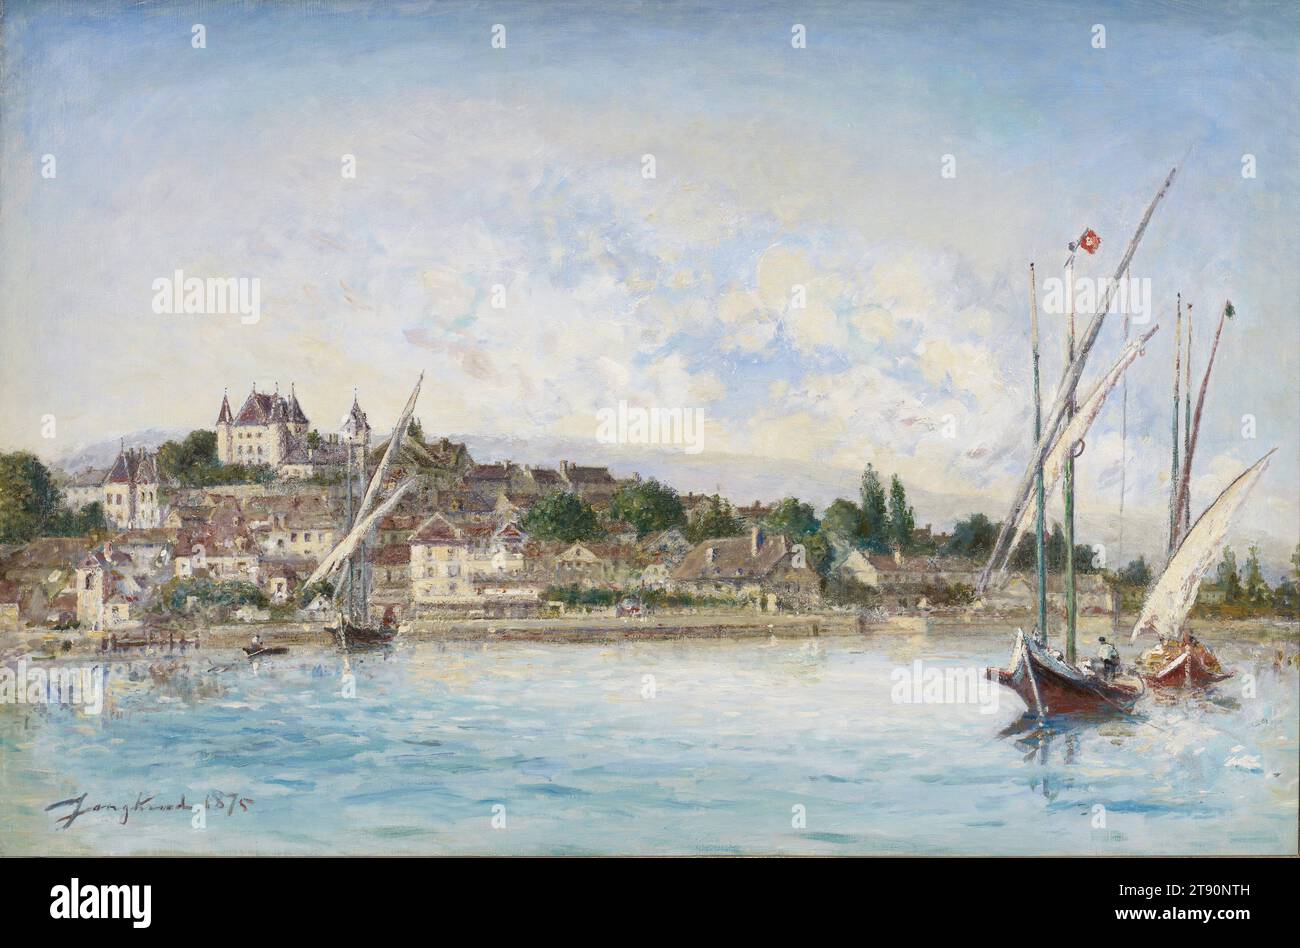 Blick auf Lake Léman in Nyon, 1875, Johan Barthold Jongkind, Niederländisch, 1819 - 1891, 24 x 34 Zoll (60,96 x 86,36 cm) (Leinwand)29 3/4 x 41 x 4 1/4 Zoll (75,57 x 104,14 x 10,8 cm) (Außenrahmen), Öl auf Leinwand, Niederlande, 19. Jahrhundert, geboren und ausgebildet in Holland, wurde Jongkind zu einem Pionier der Outdoor-Malerei in Frankreich. Die unmittelbare Wirkung seines gebrochenen Pinselstils und seiner lebendigen Farbe beeindruckte den jungen Claude Monet. Nachdem die beiden Künstler in den frühen 1860er Jahren an der Küste der Normandie zusammenschmerzten, kommentierte Monet: „Von dieser Zeit an war er mein echter Meister“ Stockfoto